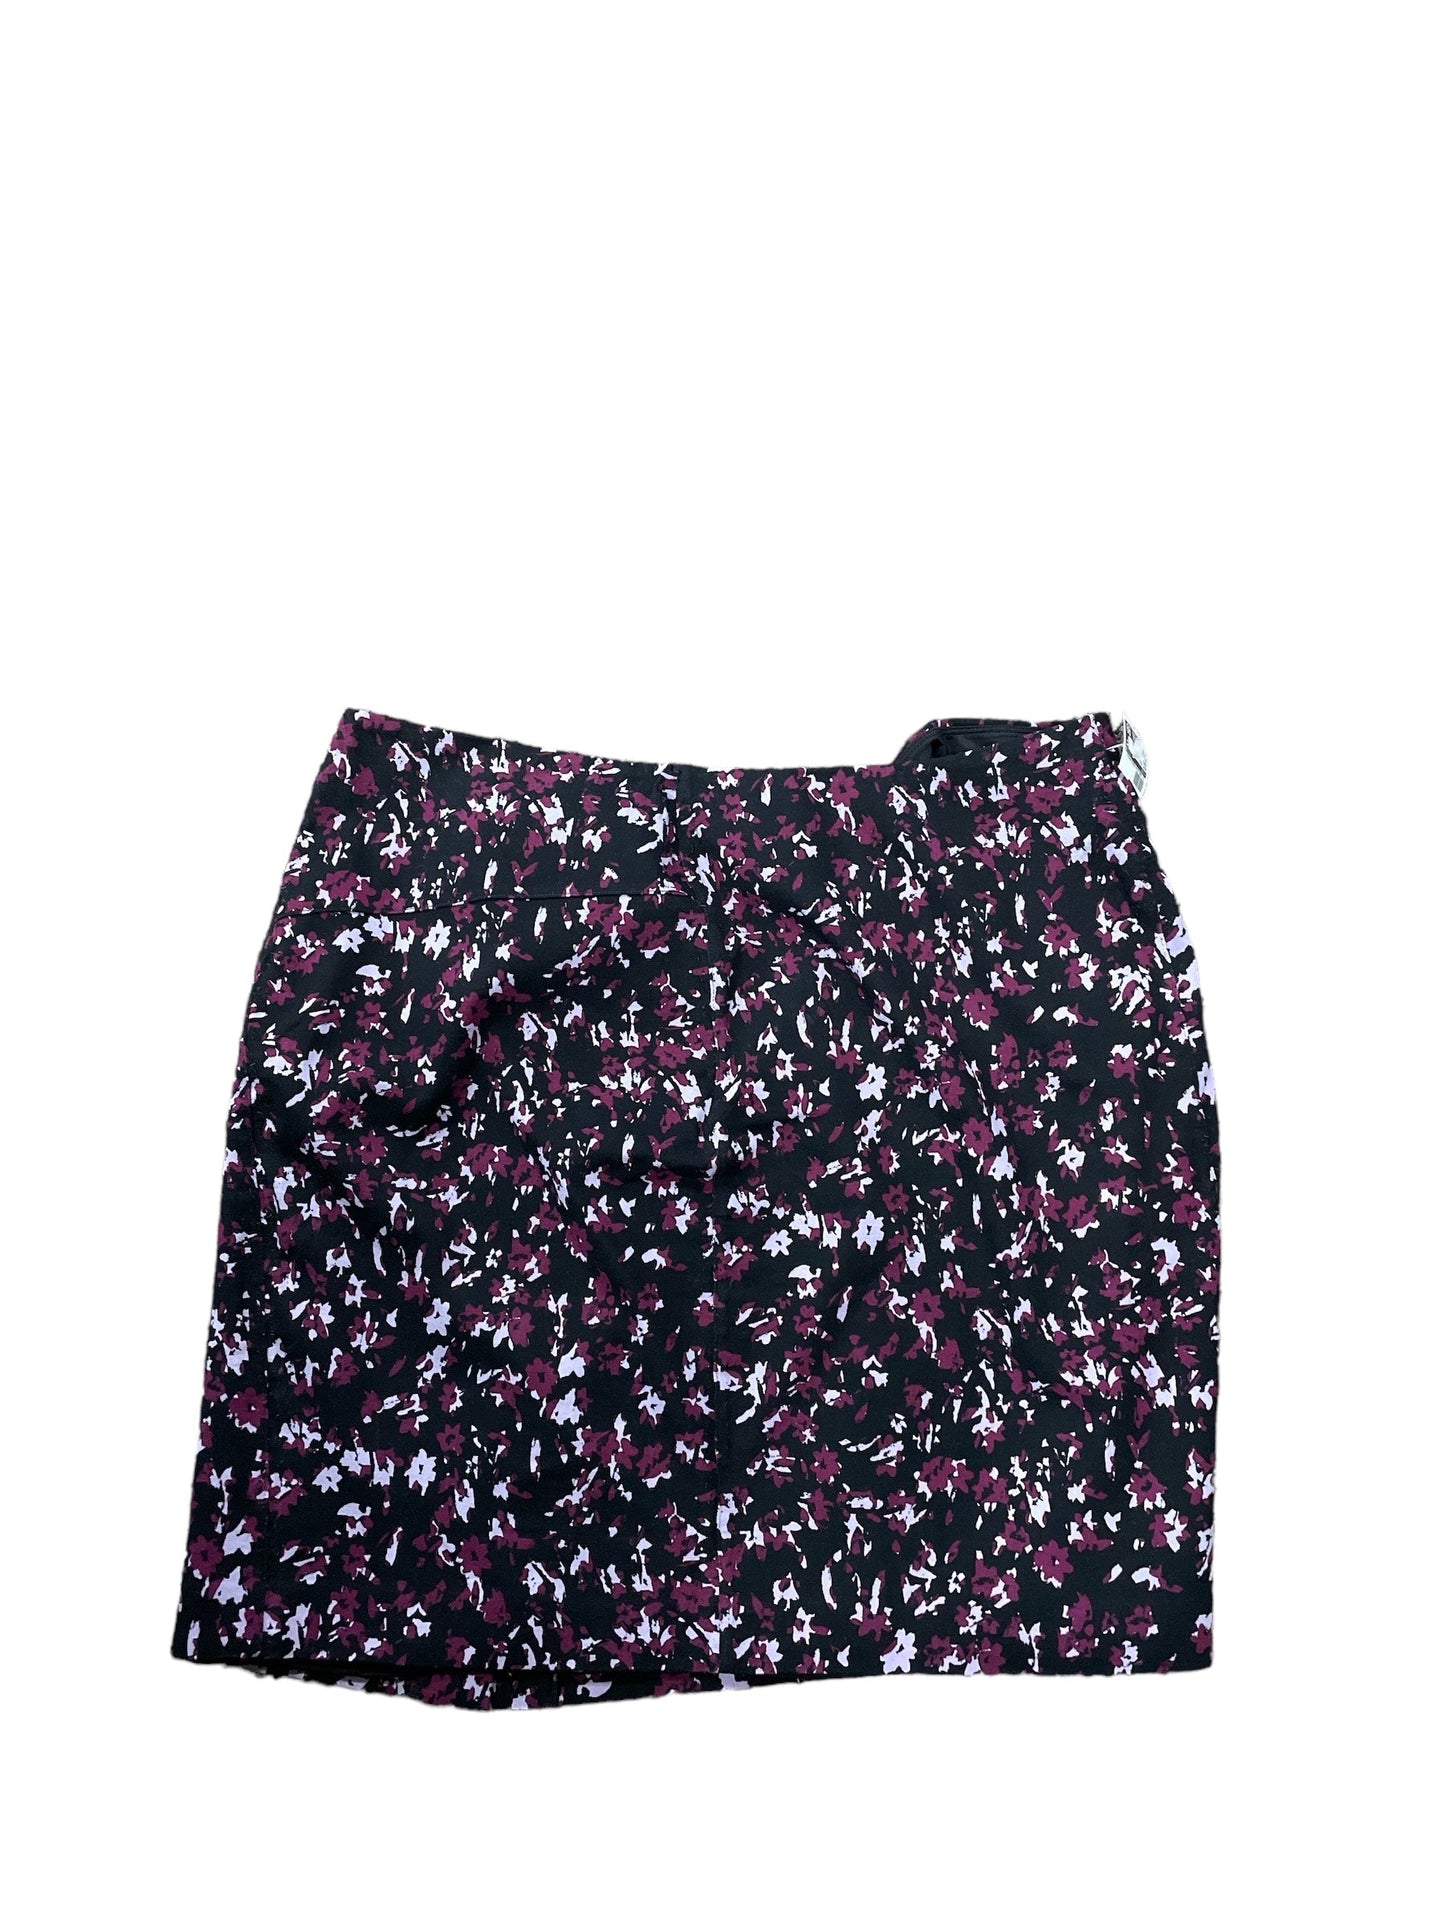 Purple Skirt Mini & Short Lysse, Size 2x